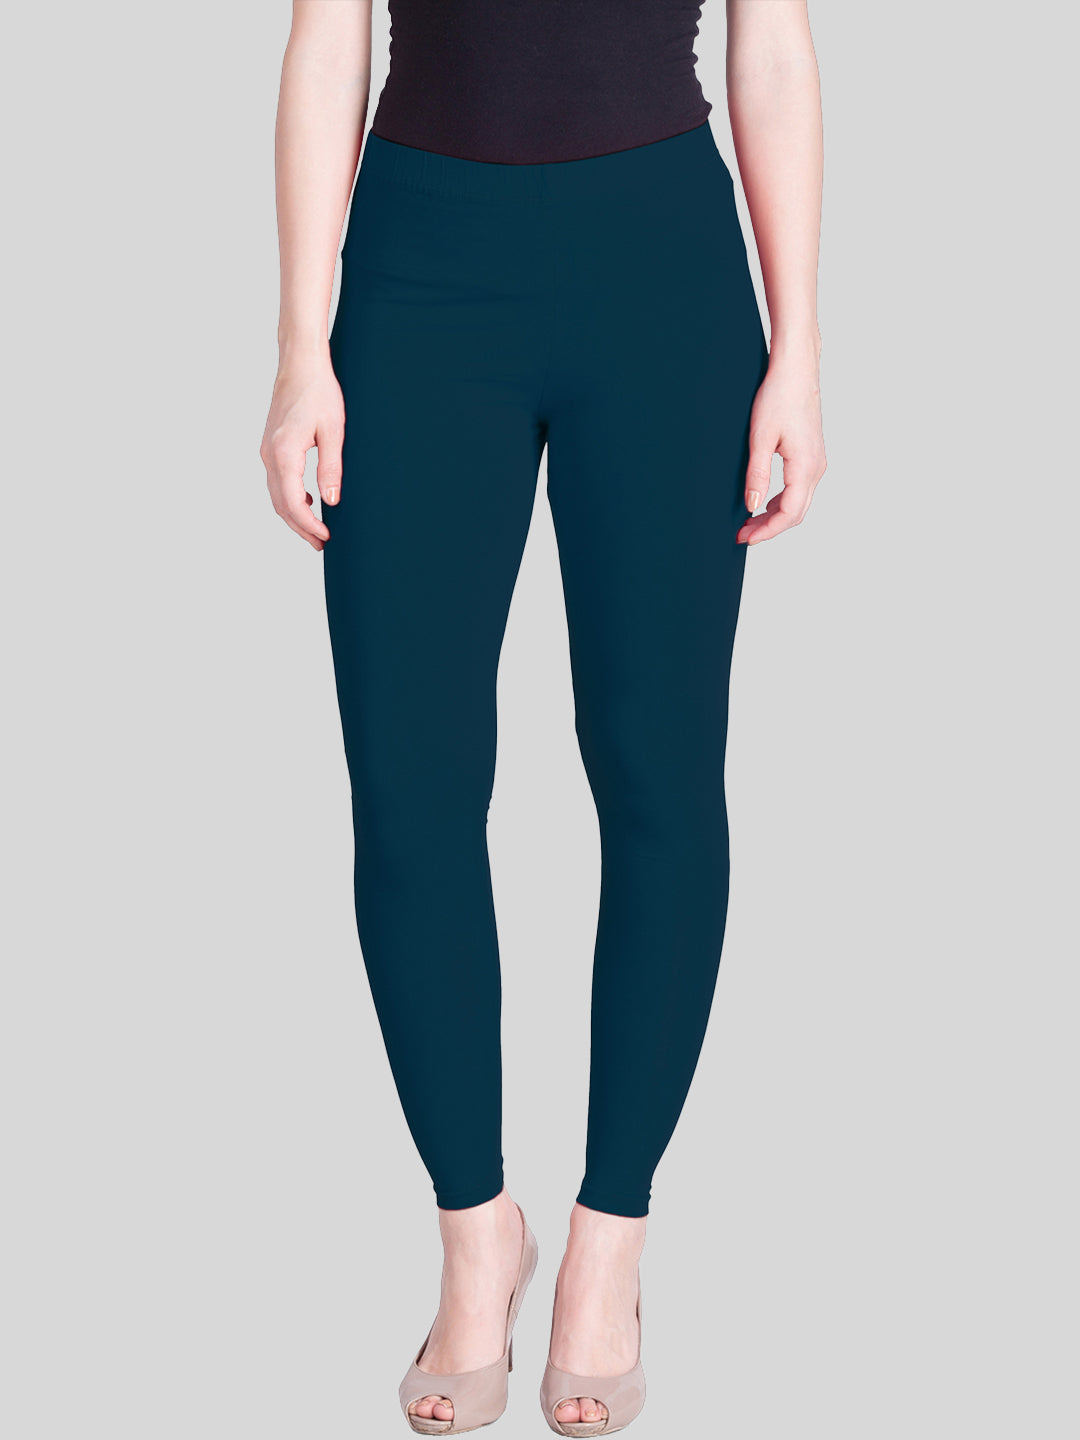 Srishti - Women - Legging - Color - Navy Blue - 001 - Free Size